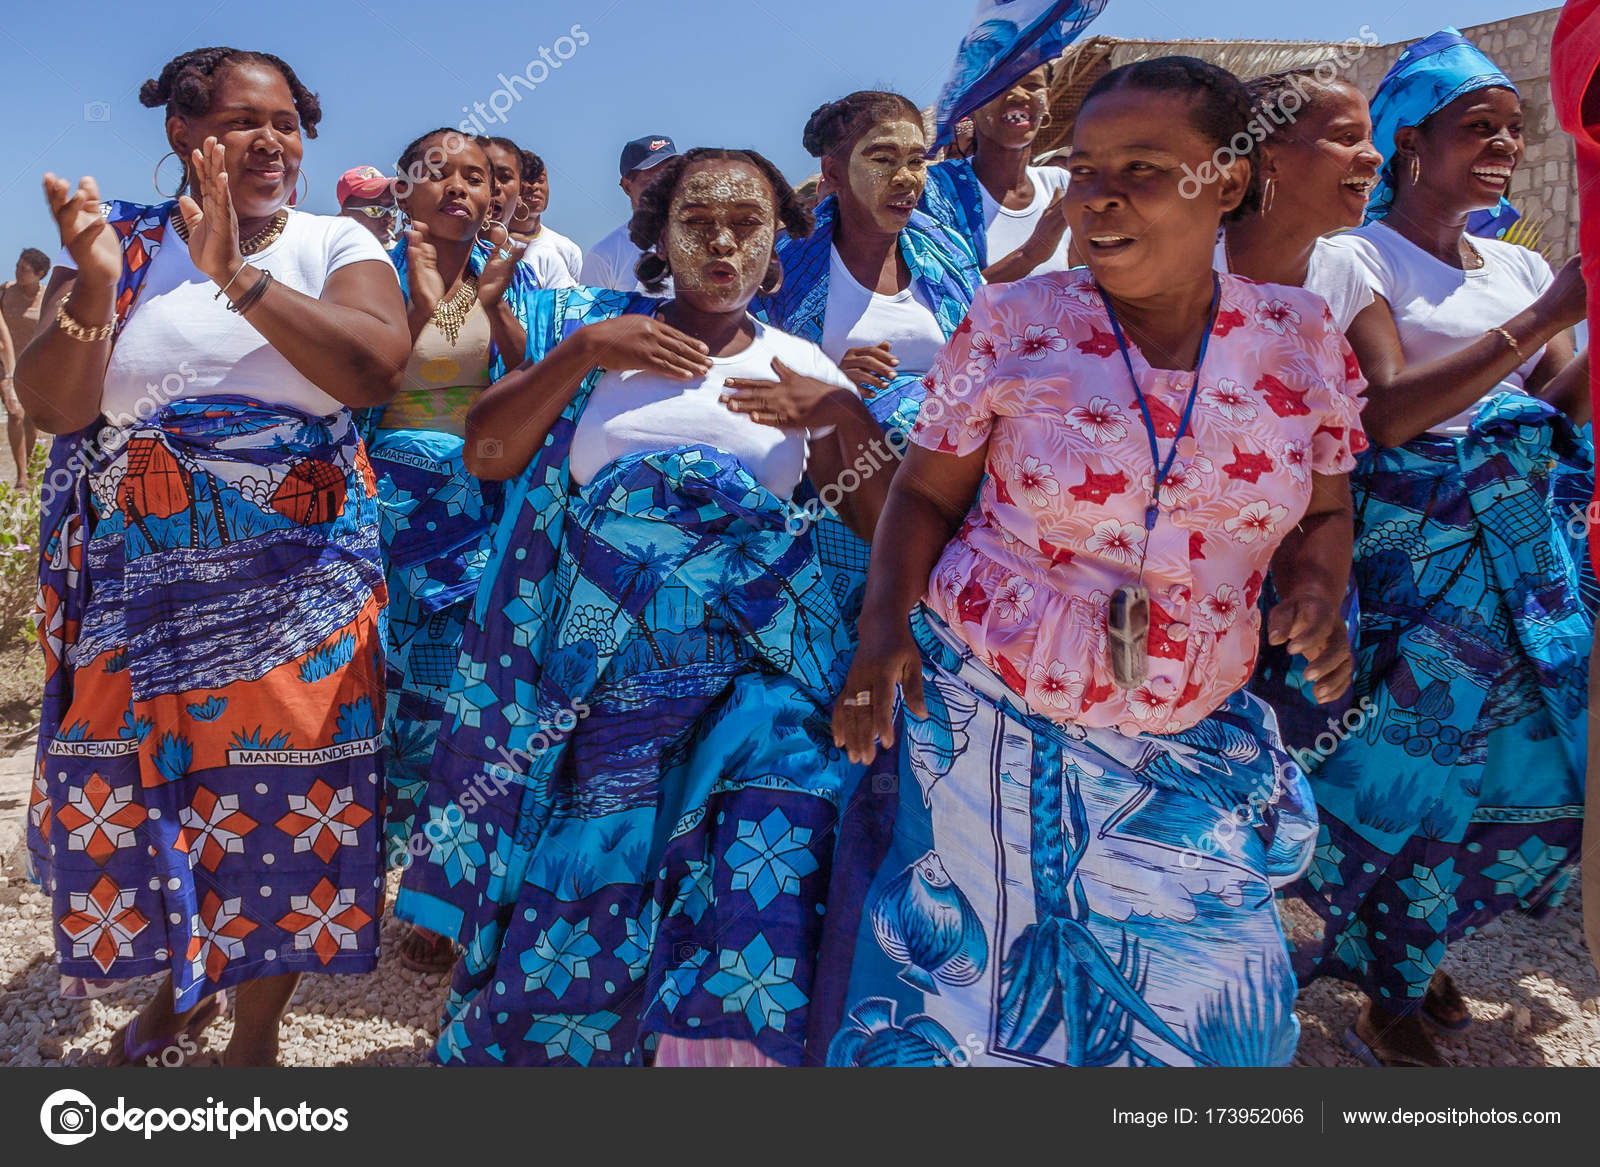 Madagaskiske med deres traditionelle – Redaktionelle stock-fotos © #173952066